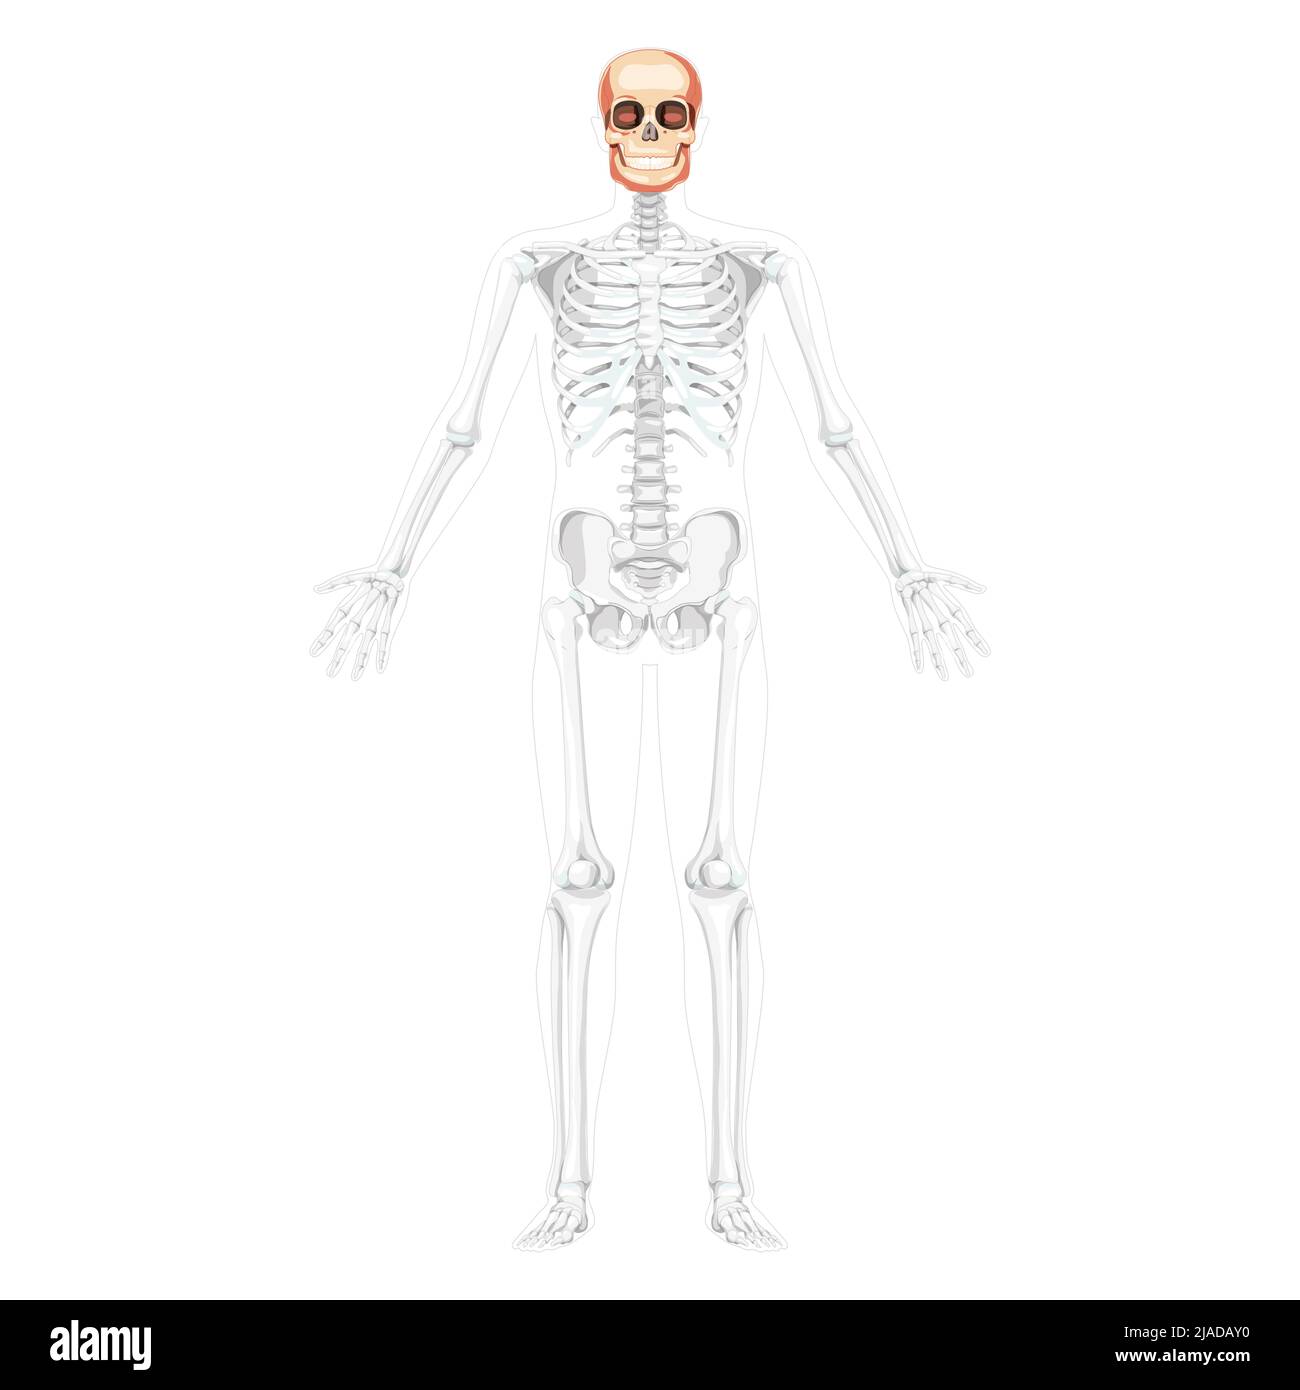 Tête humaine crâne Skeleton vue avant avec mains ouvertes partiellement transparente position du corps. Modèle de mâchoires anatomiquement correct. Image vectorielle réaliste et réaliste isolée sur fond blanc Illustration de Vecteur